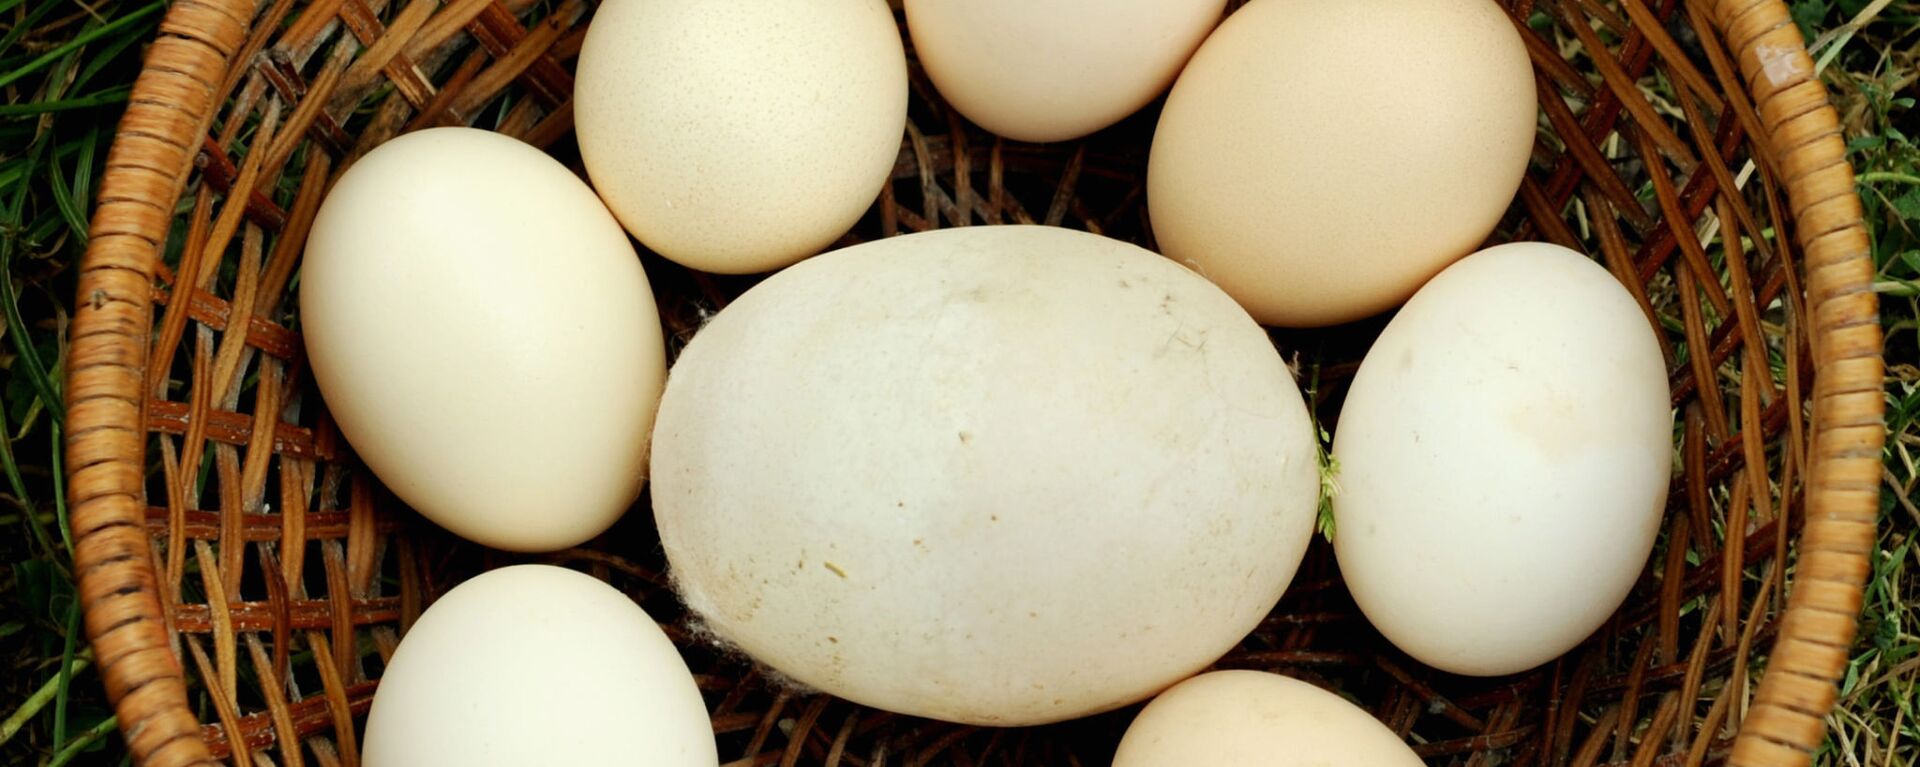 بيضة دجاج عملاقة تزن 170 جرامًا من جورجيا ،دخلت موسوعة غينيس للأرقام القياسية، عام 2010 - سبوتنيك عربي, 1920, 12.02.2022